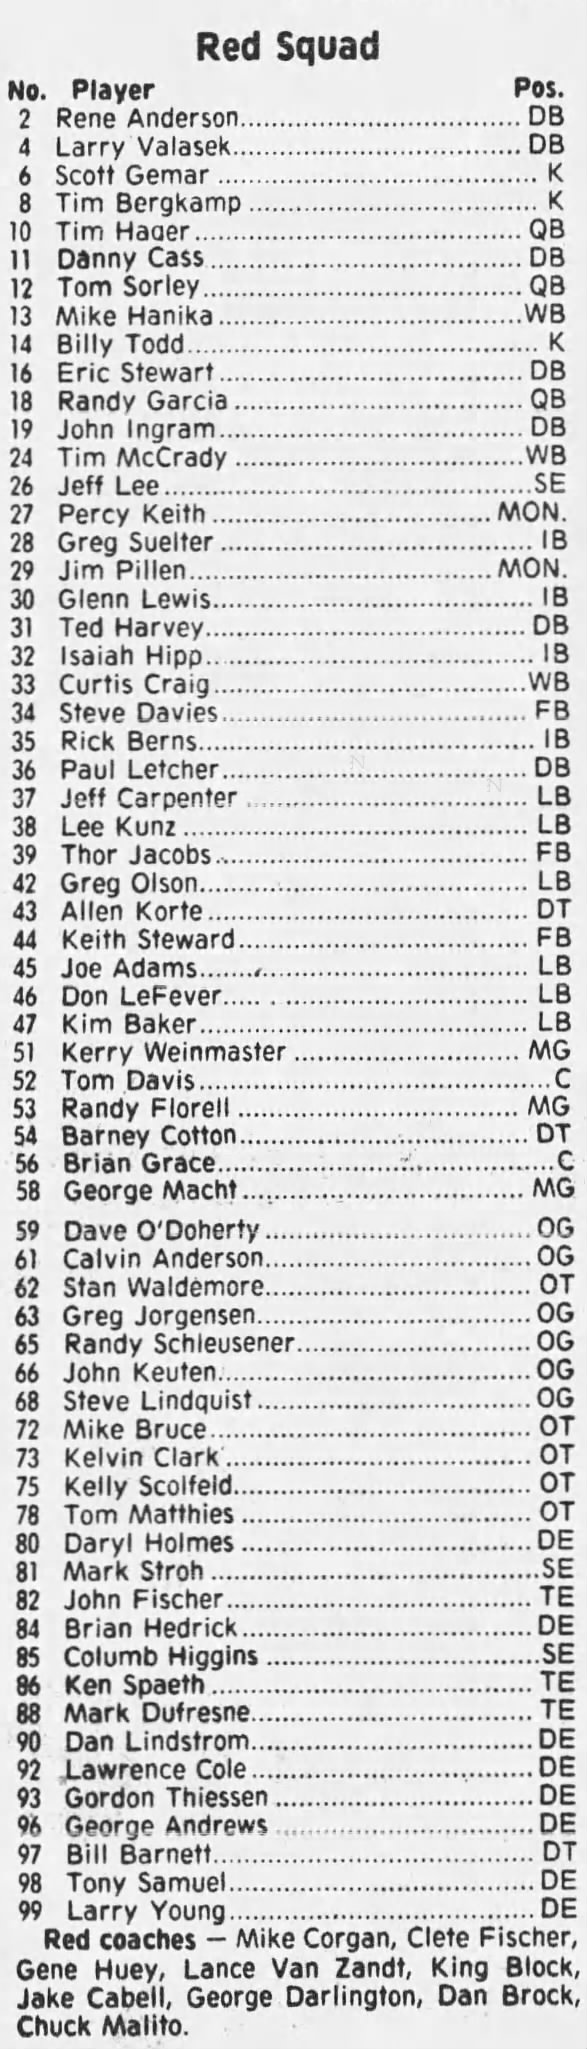 1977 Nebraska football spring game Red roster